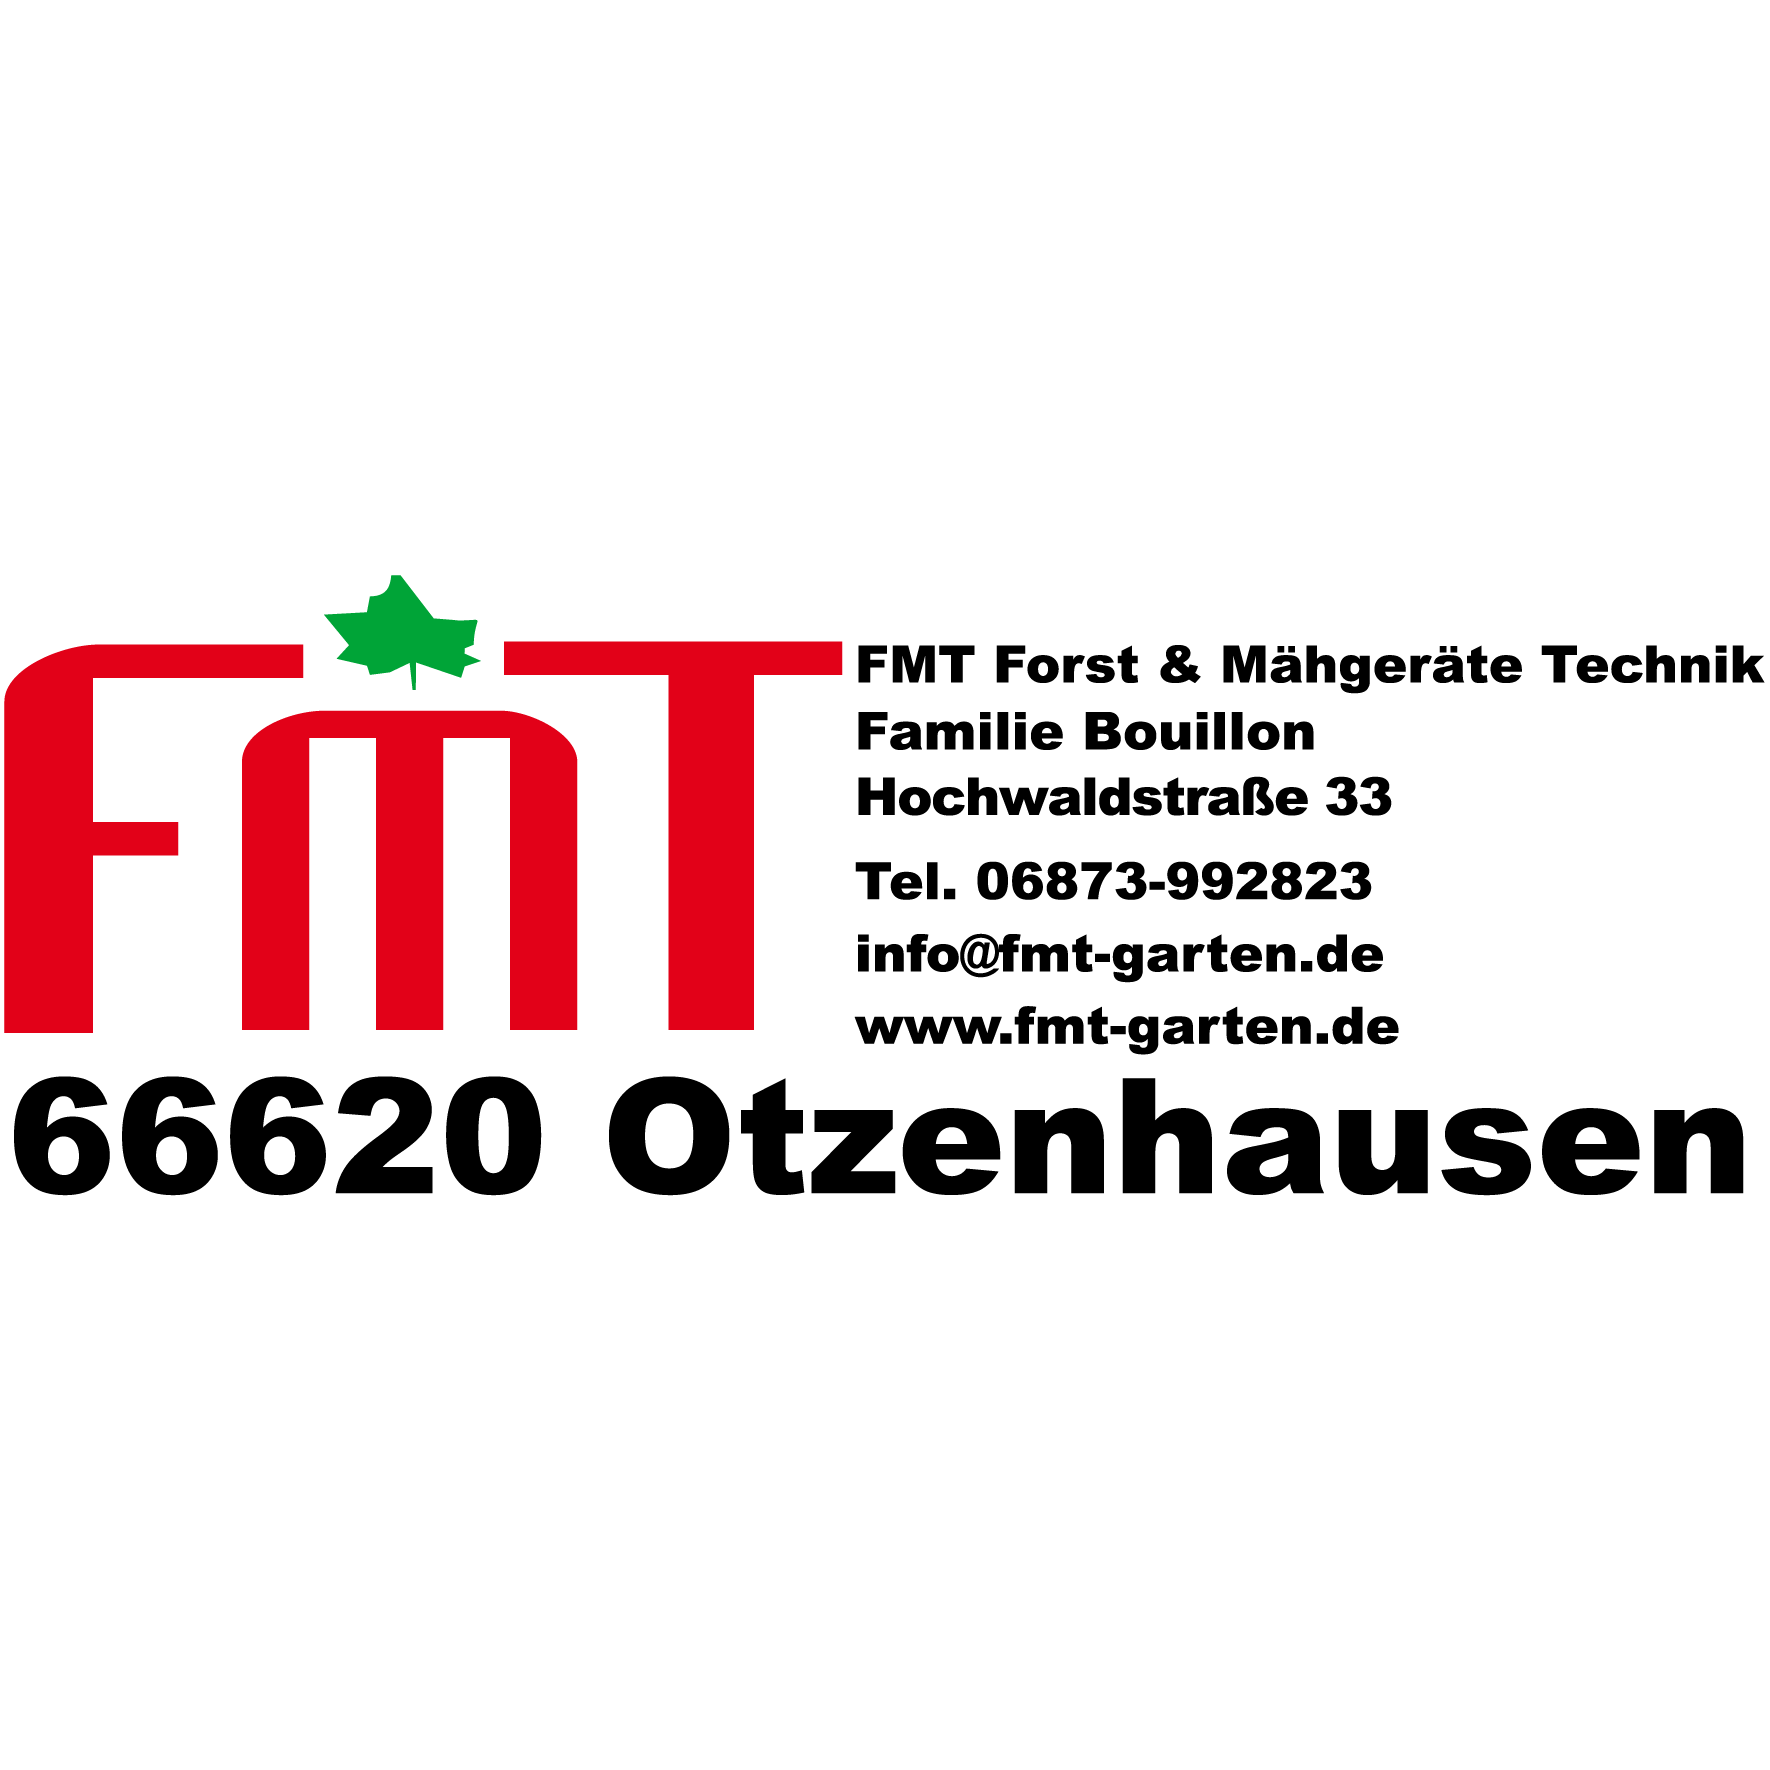 Logo FMT Forst- & Mähgeräte Technik GmbH